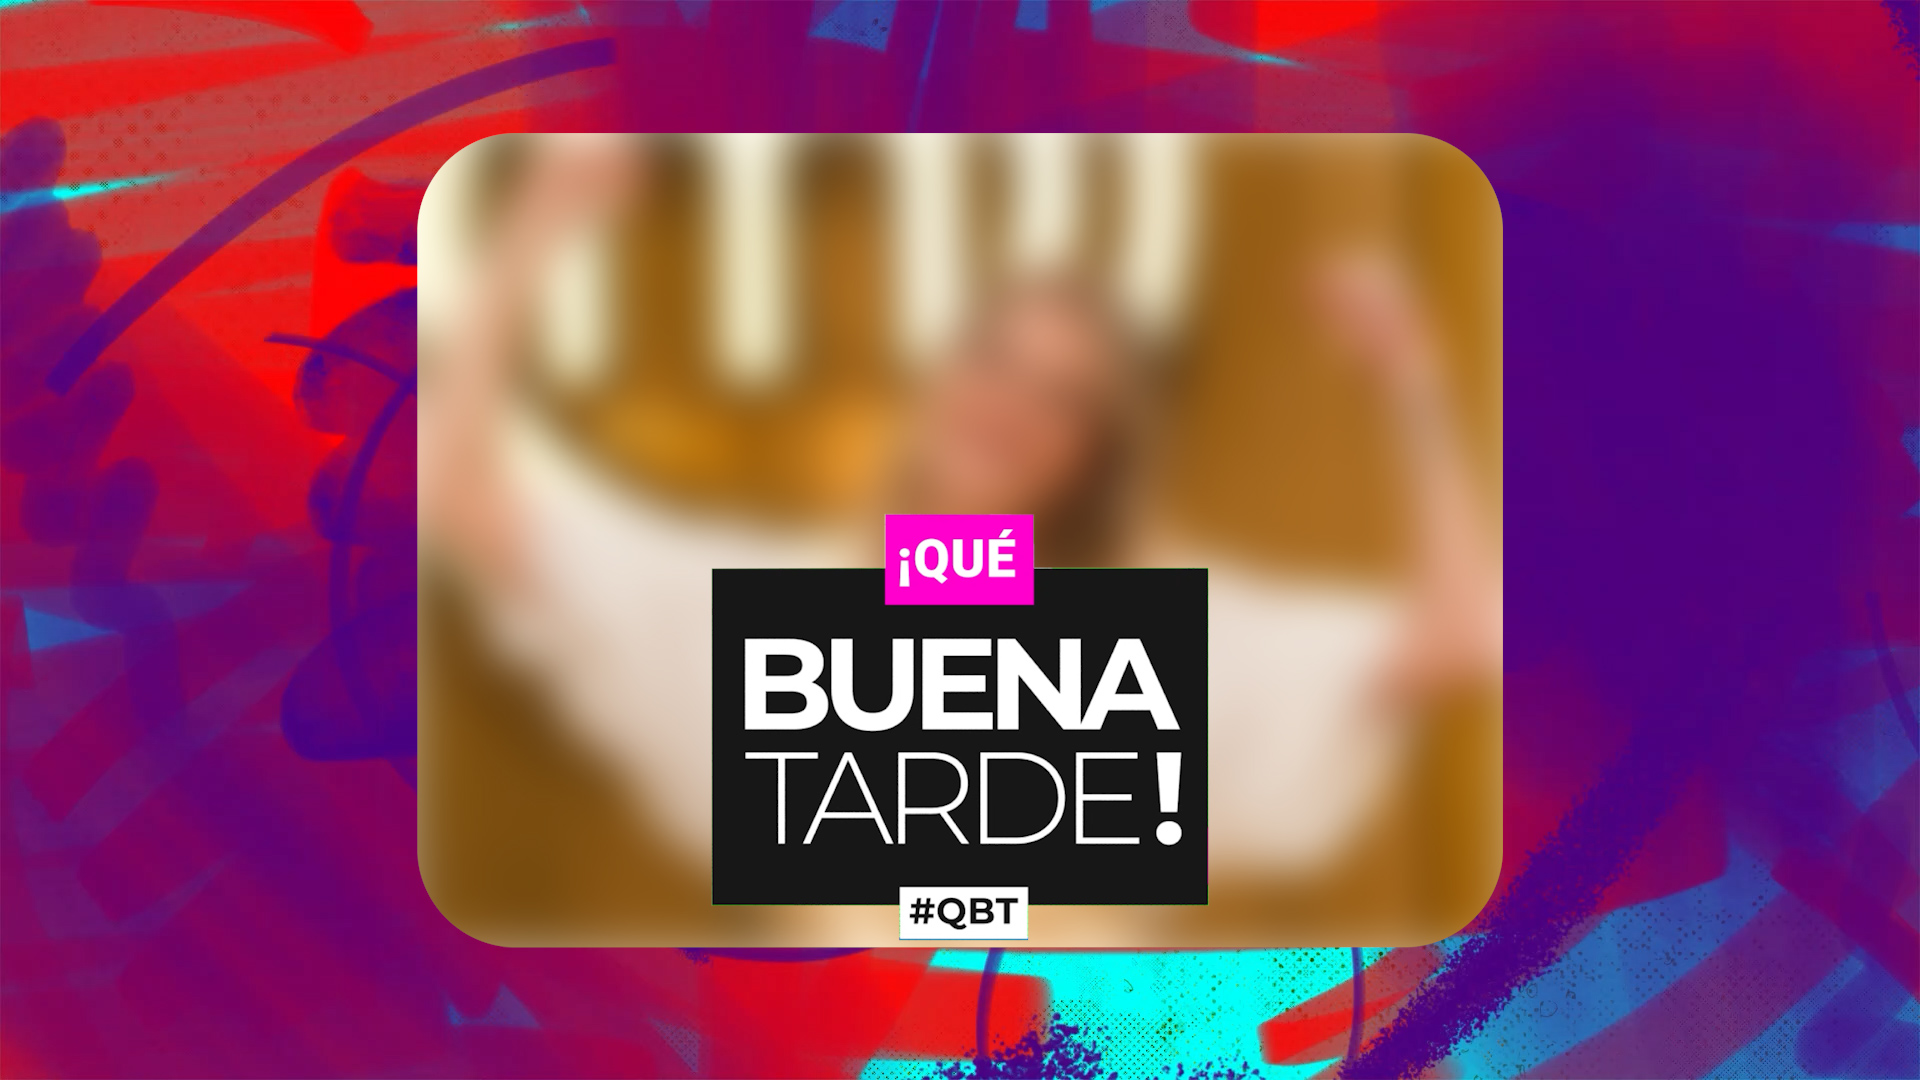 Jugá con #QBT y ganá entradas al cine - Canal 9 Televida Mendoza